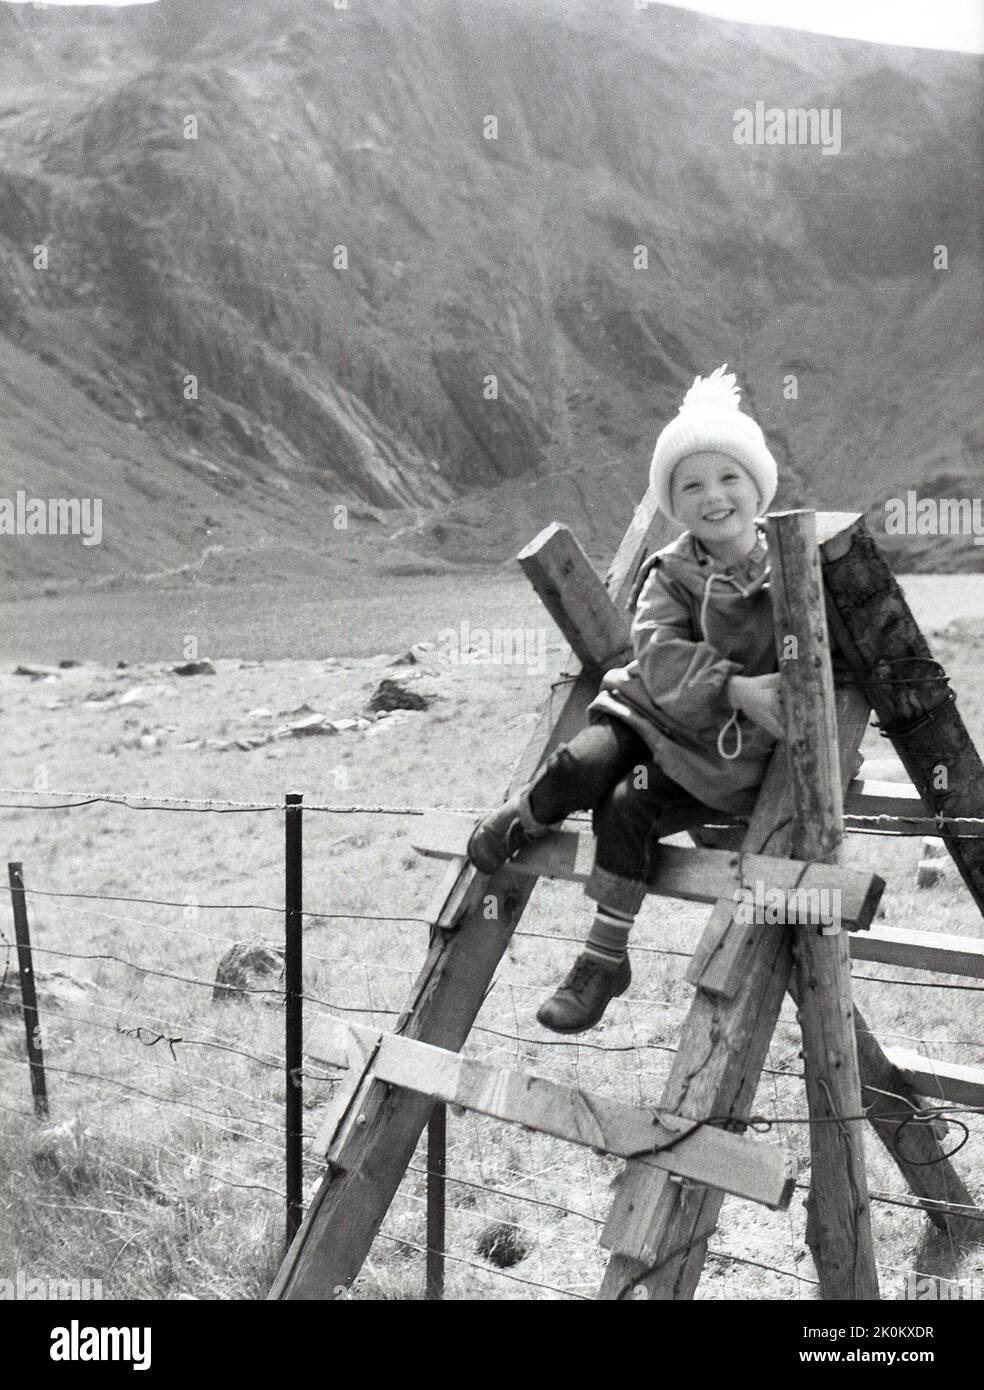 1956, historisch, ein Kind sitzt für ein Foto auf einem Holzstiel in einem Feld, Berge im Hintergrund, Snowdonia, Wales, Großbritannien. Stile sind Strukturen, die mit Stufen oder Leitern in ländlichen Gebieten hergestellt werden, die Spaziergängern ermöglichen, über einen Zaun zu gehen, während sie Tiere schützen und ihr Entweichen verhindern. Stockfoto